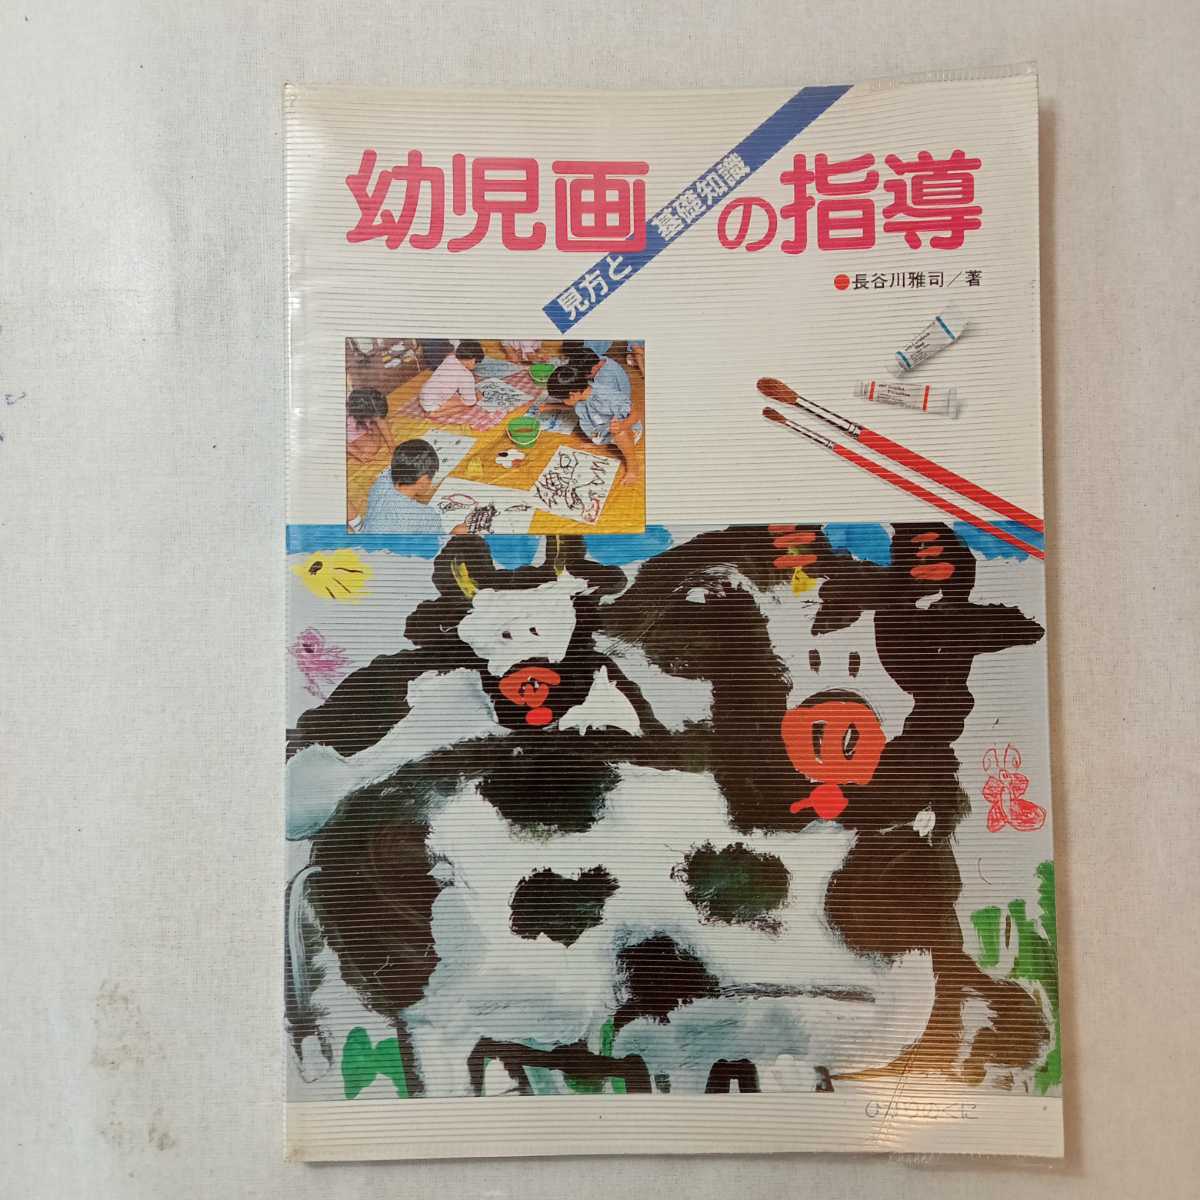 zaa-366♪幼児画の指導―見方と基礎知識 単行本 1986/5/1 長谷川 雅司 (著) ひかりのくに_画像1